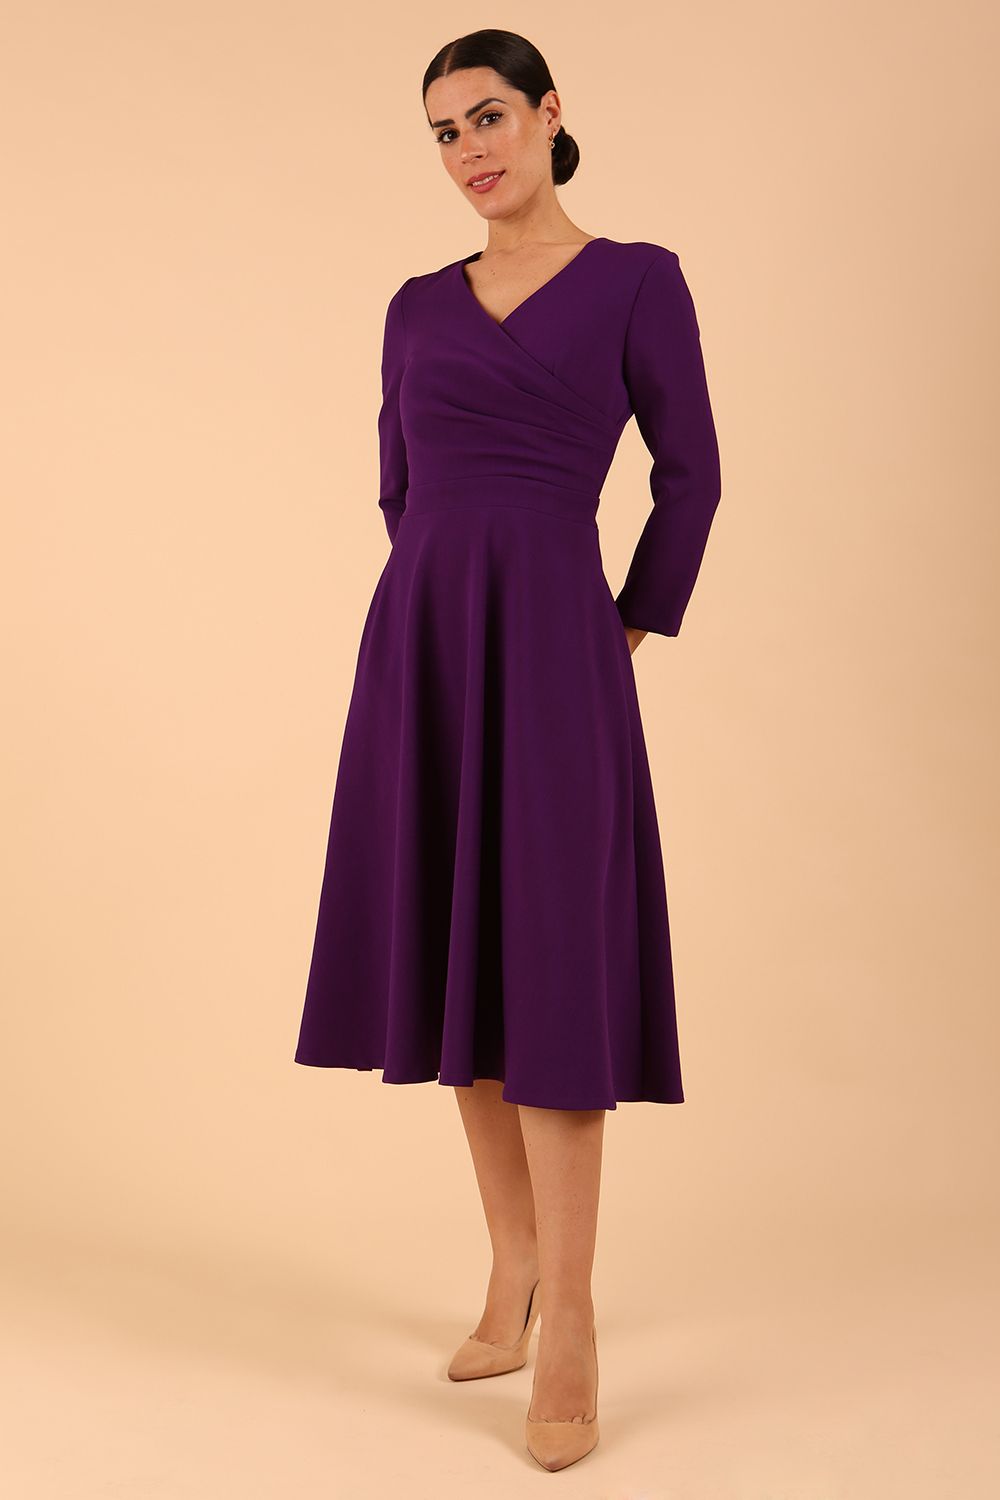 Model wearing diva catwalk Kate 3/4 Length Sleeve A-Line Swing Dress in Deep Purple front